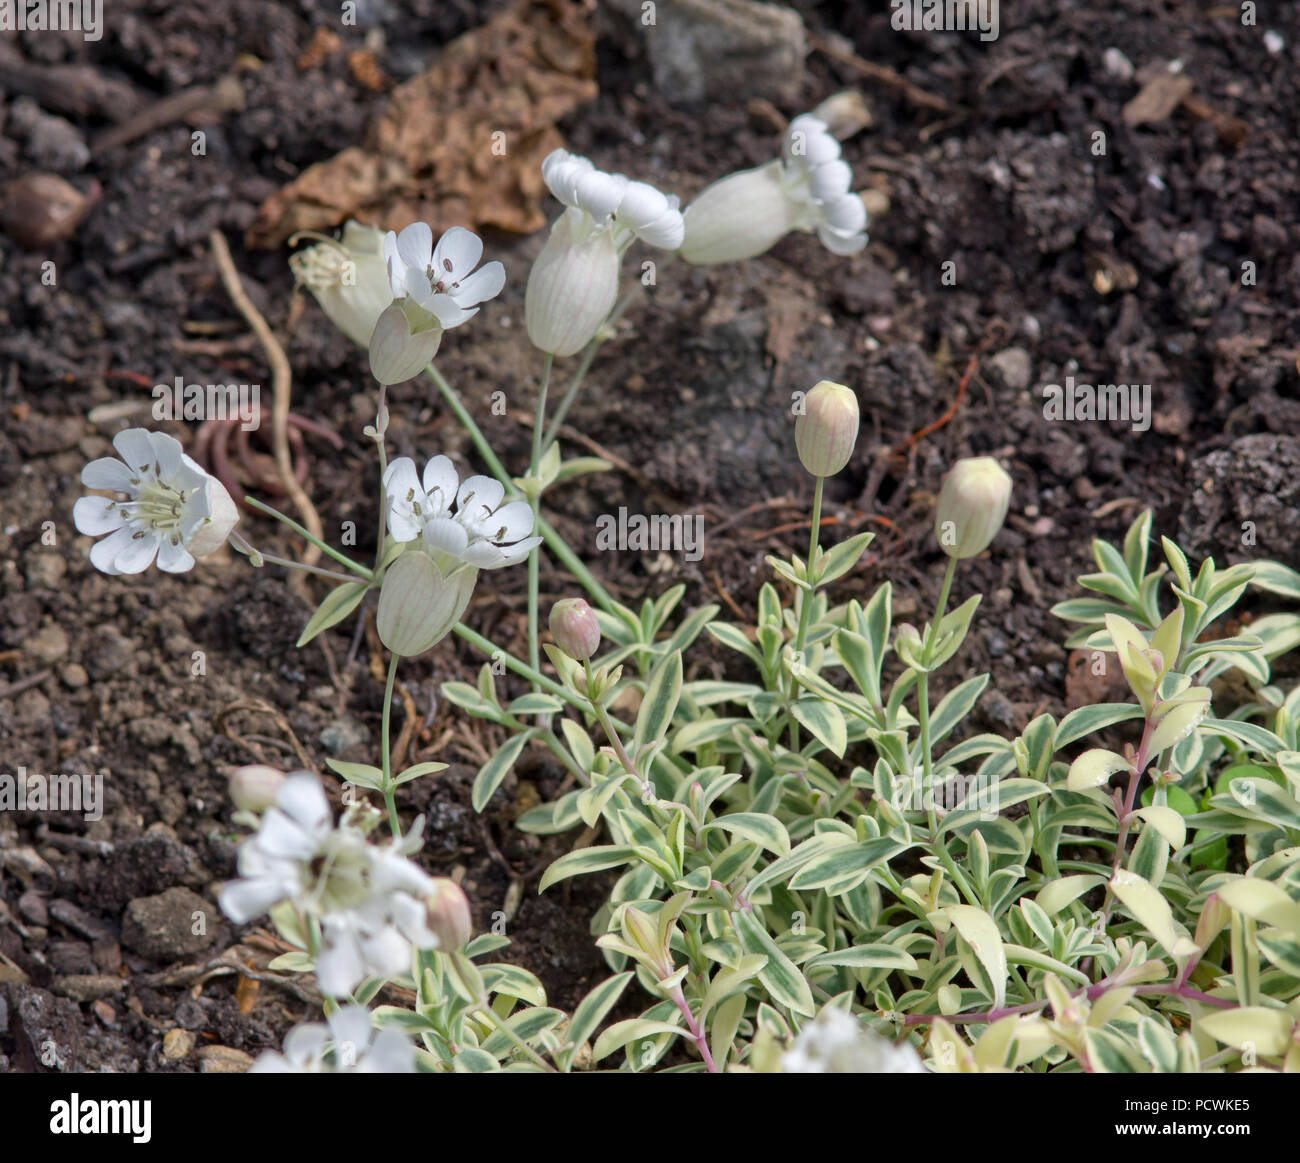 Silene uniflora 'Druett's Variegated' Stock Photo